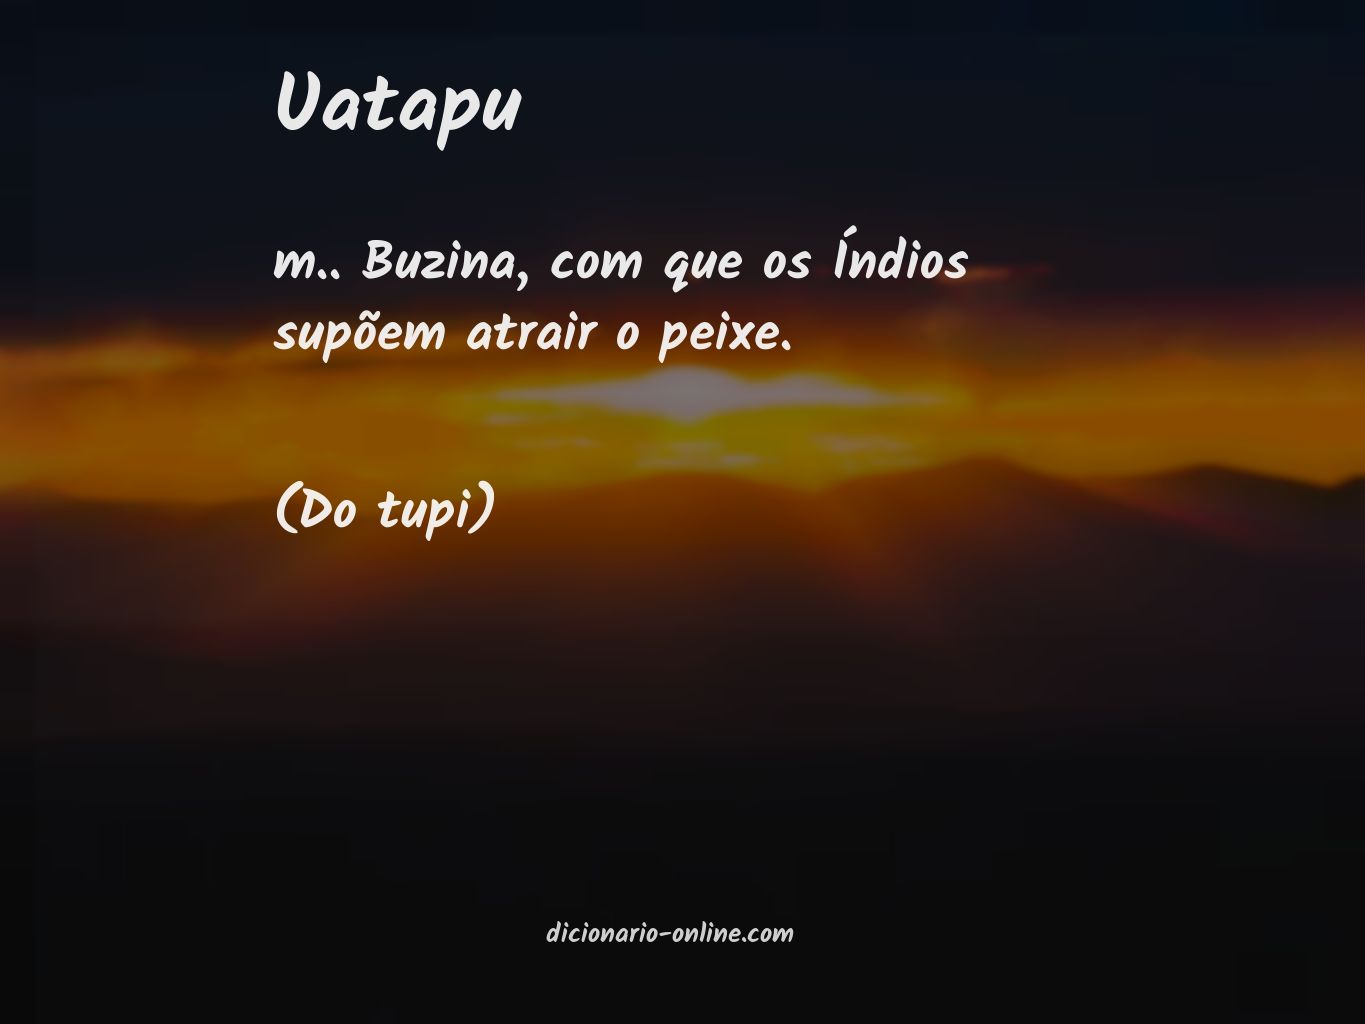 Significado de uatapu